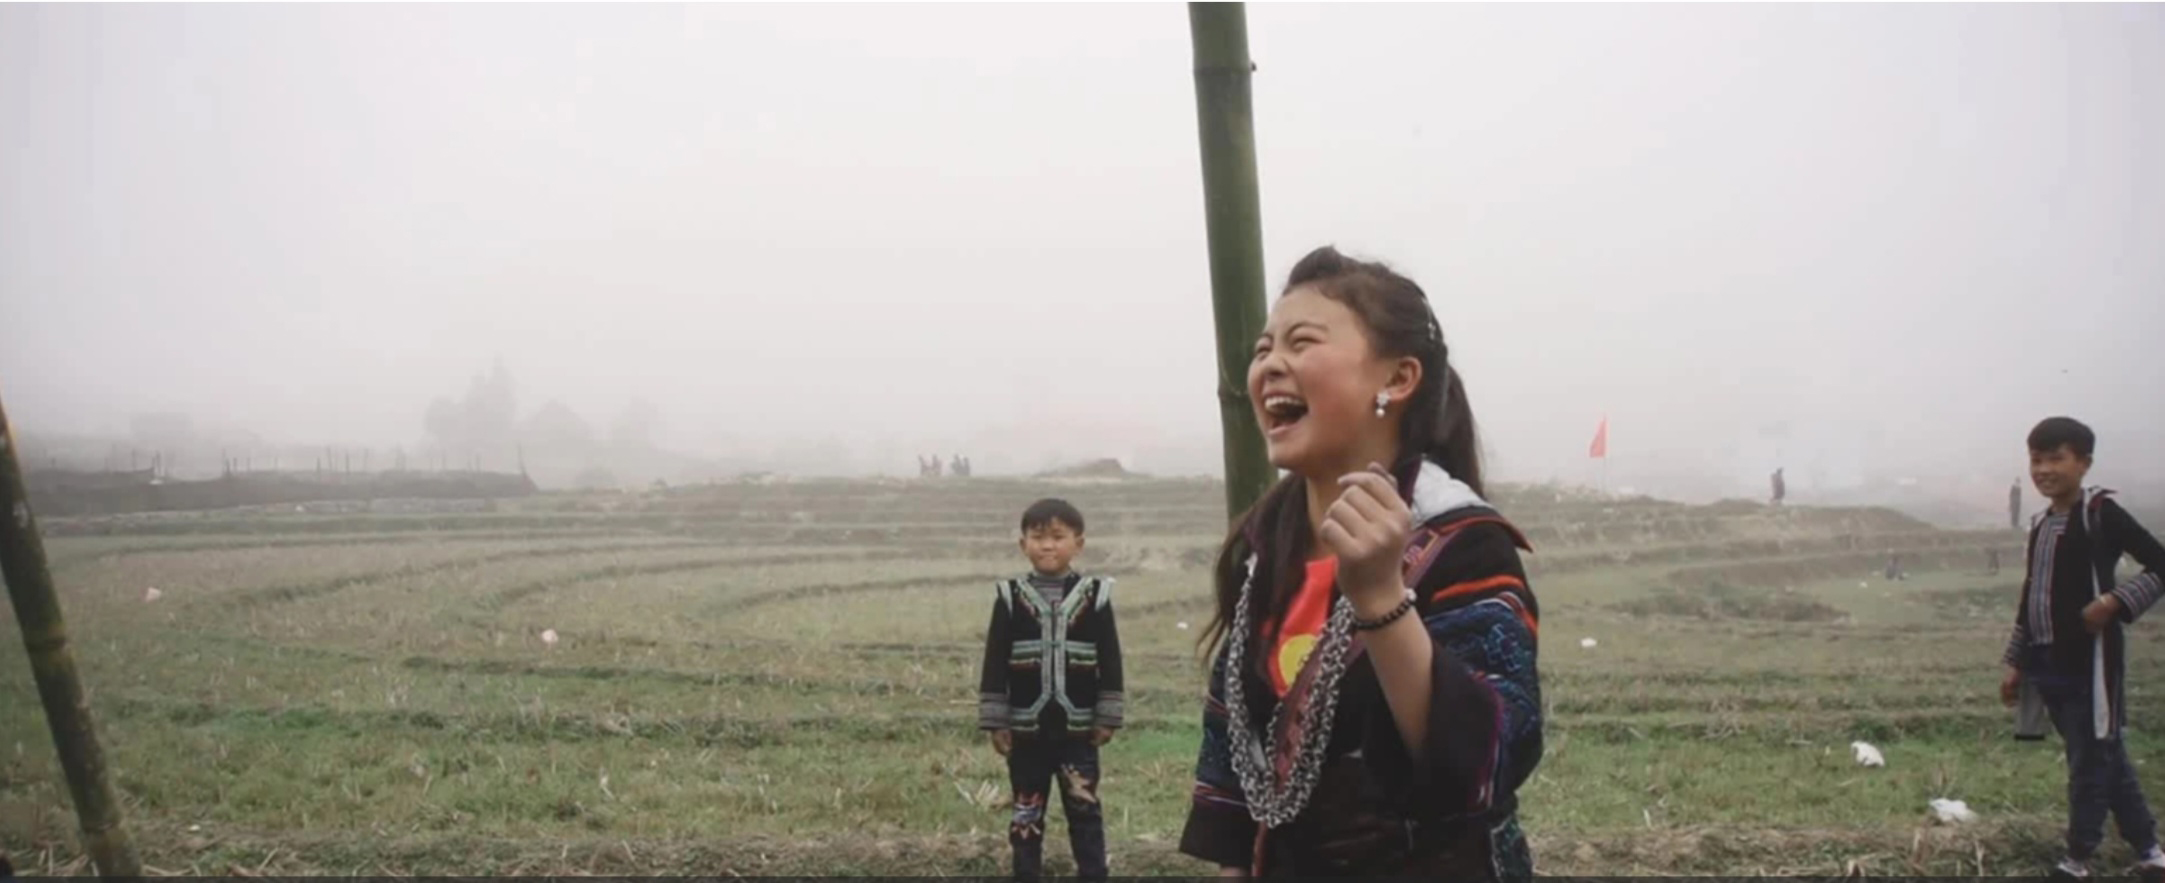 “Những đứa trẻ trong sương” là phim Việt đầu tiên lọt vào danh sách 15 phim bình chọn đề cử giải Oscar 2022 thể loại phim tài liệu, cùng nhiều giải thưởng tại các Liên hoan phim quốc tế Amsterdam, Hồng Kông, Cork…